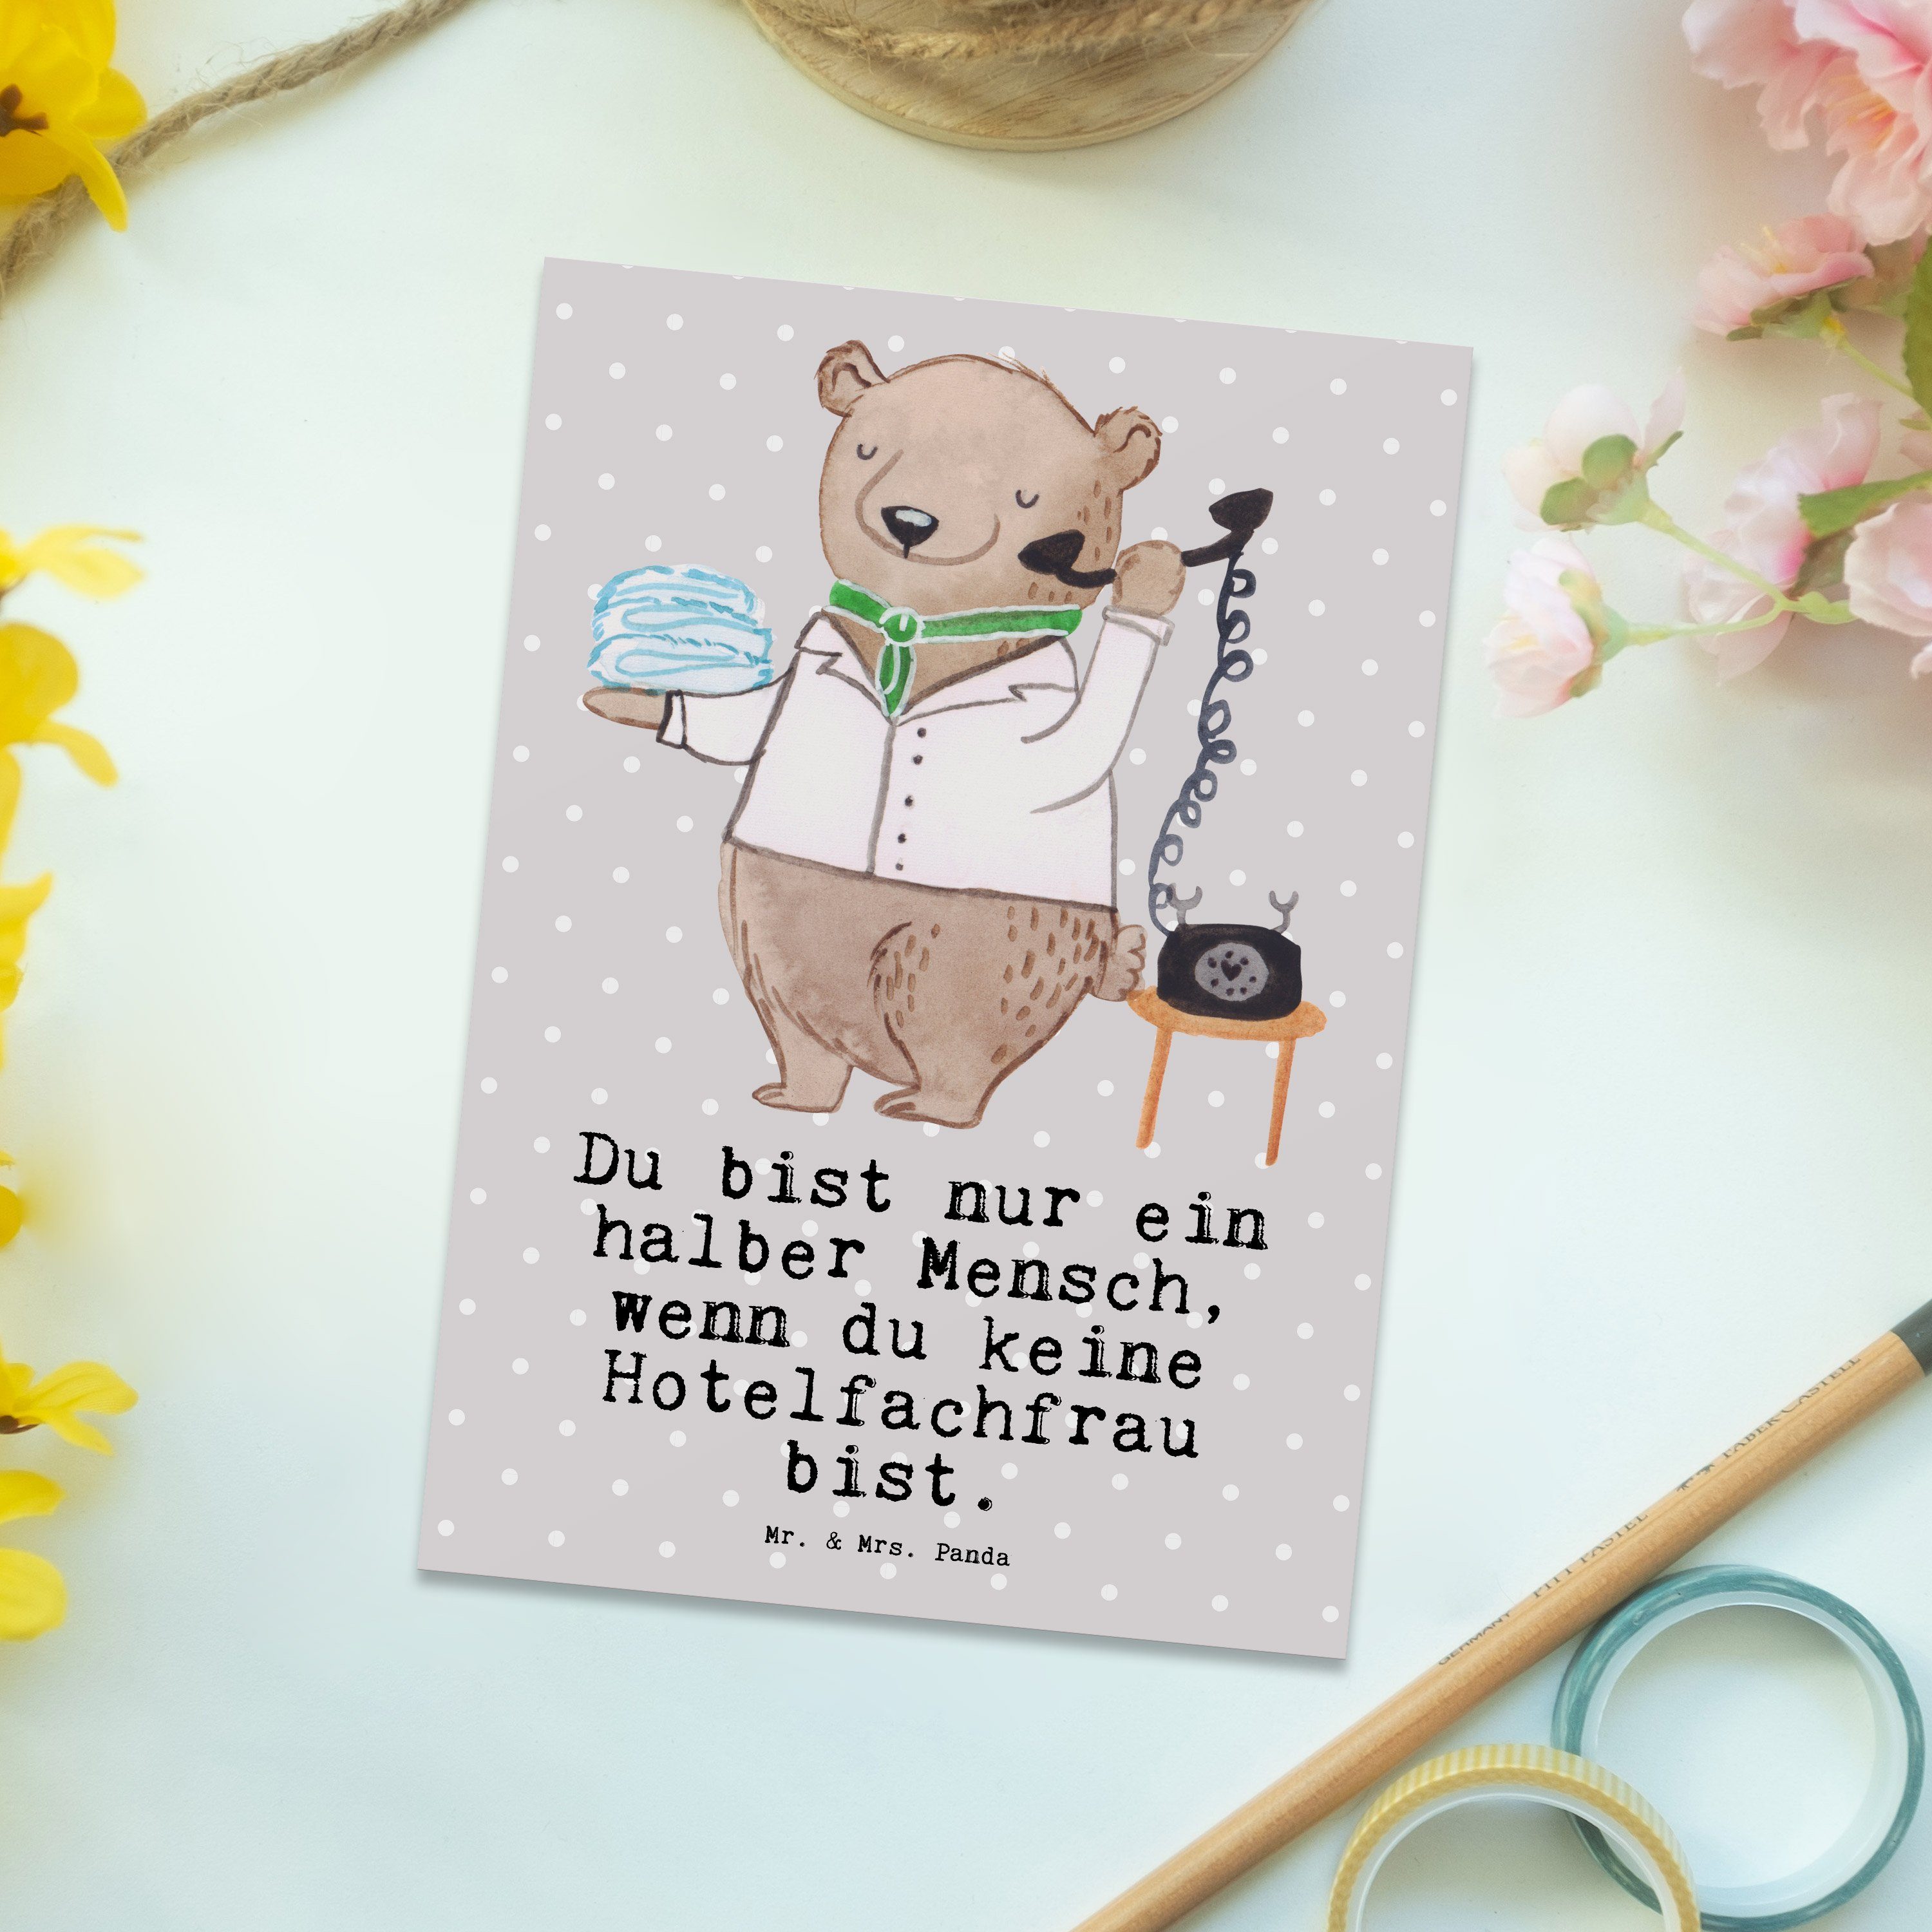 Mr. & Mrs. Panda - Hotelfachfrau Geburtstagskarte, Pastell Grau F Postkarte - Herz mit Geschenk